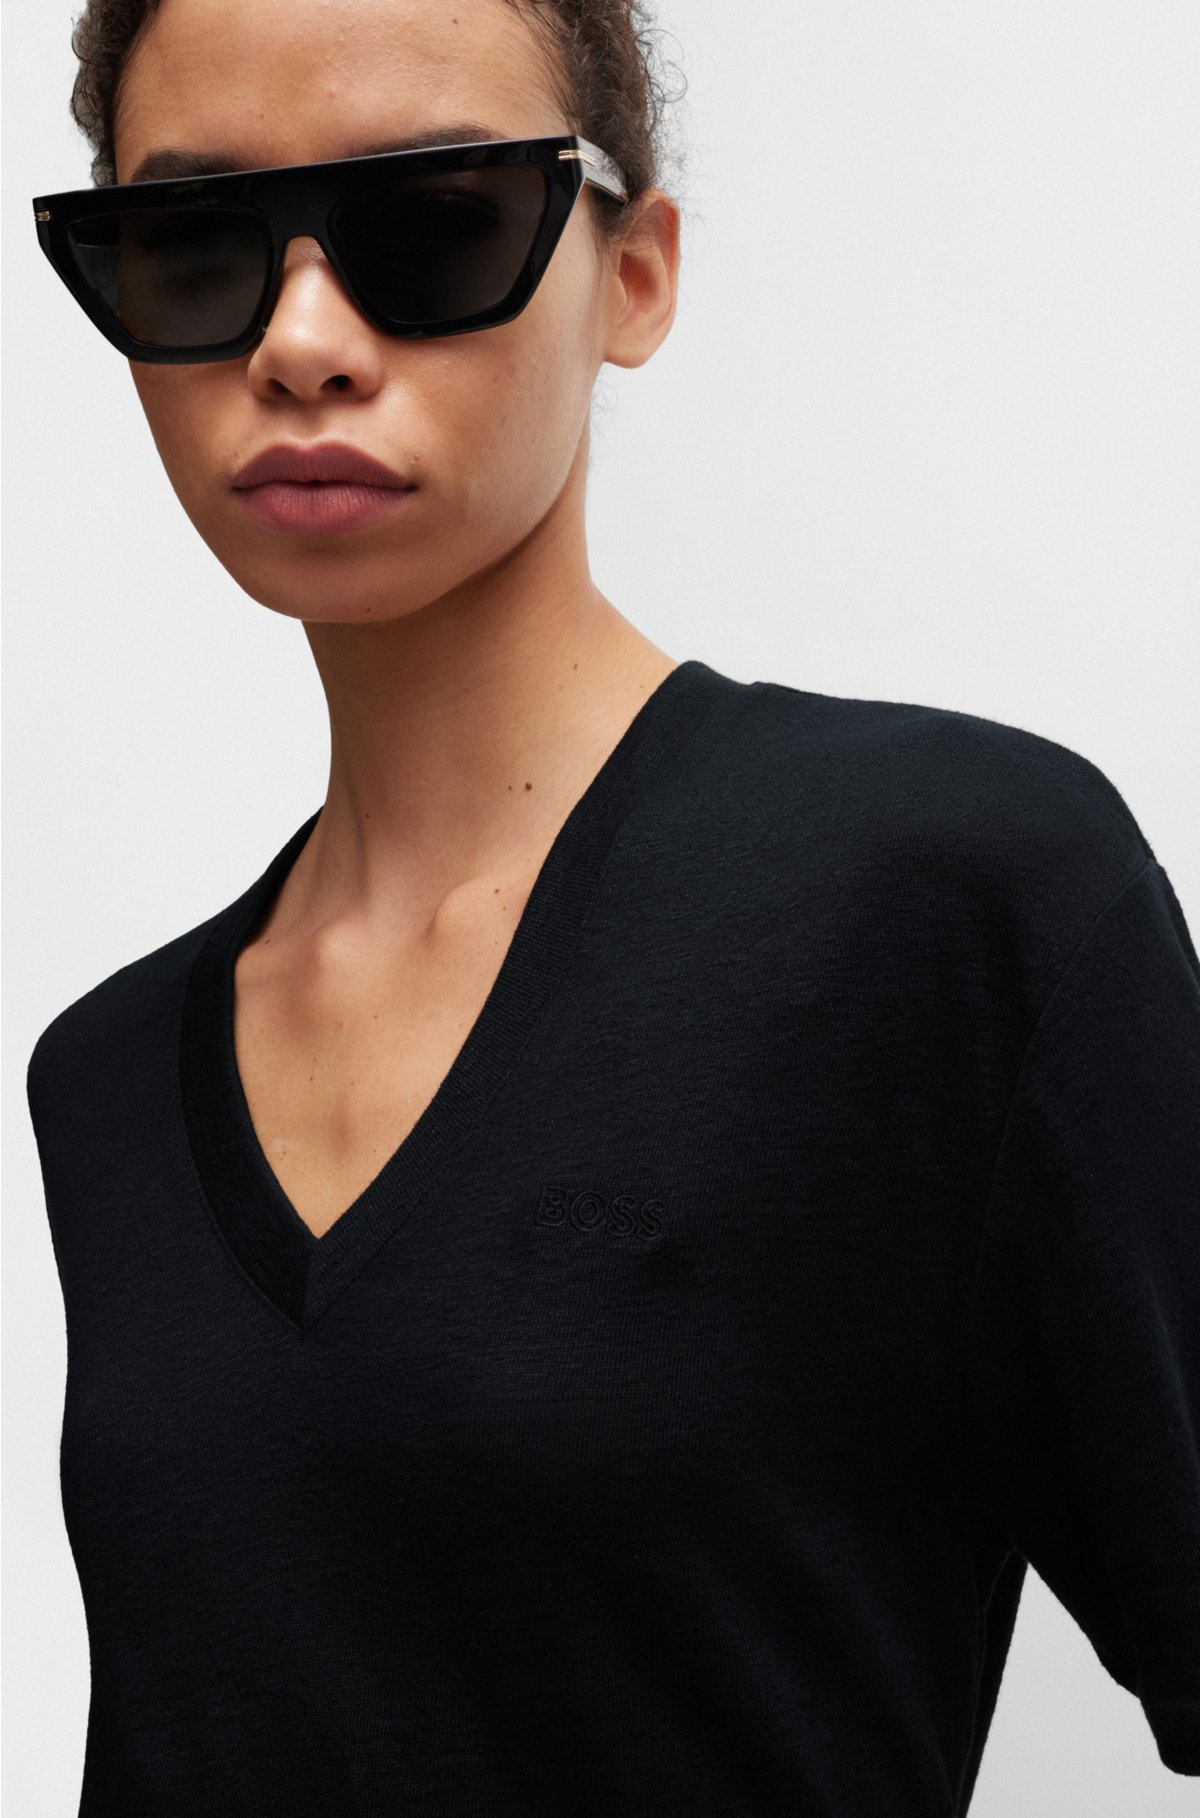 V-neck T-shirt in linen, Black